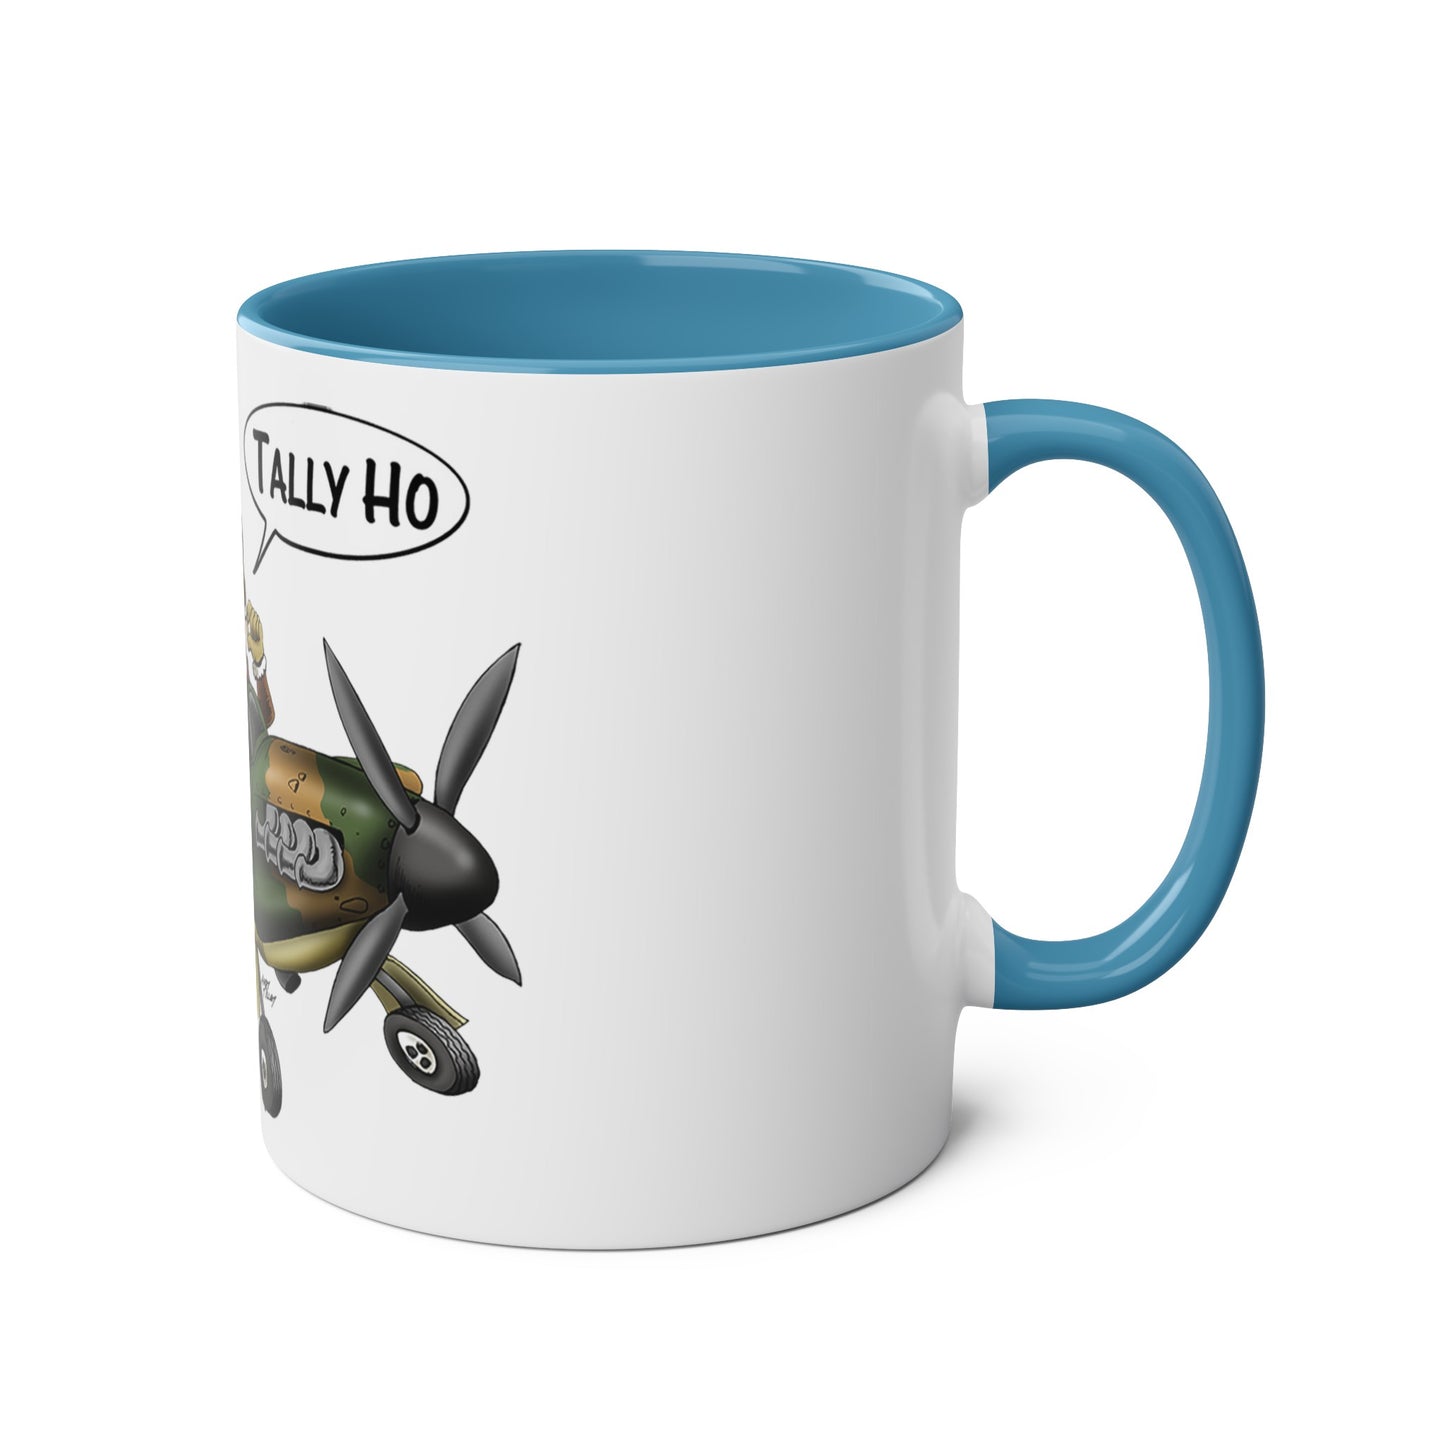 Tally Ho Spitfire Two-Tone Coffee Mugs, 11oz